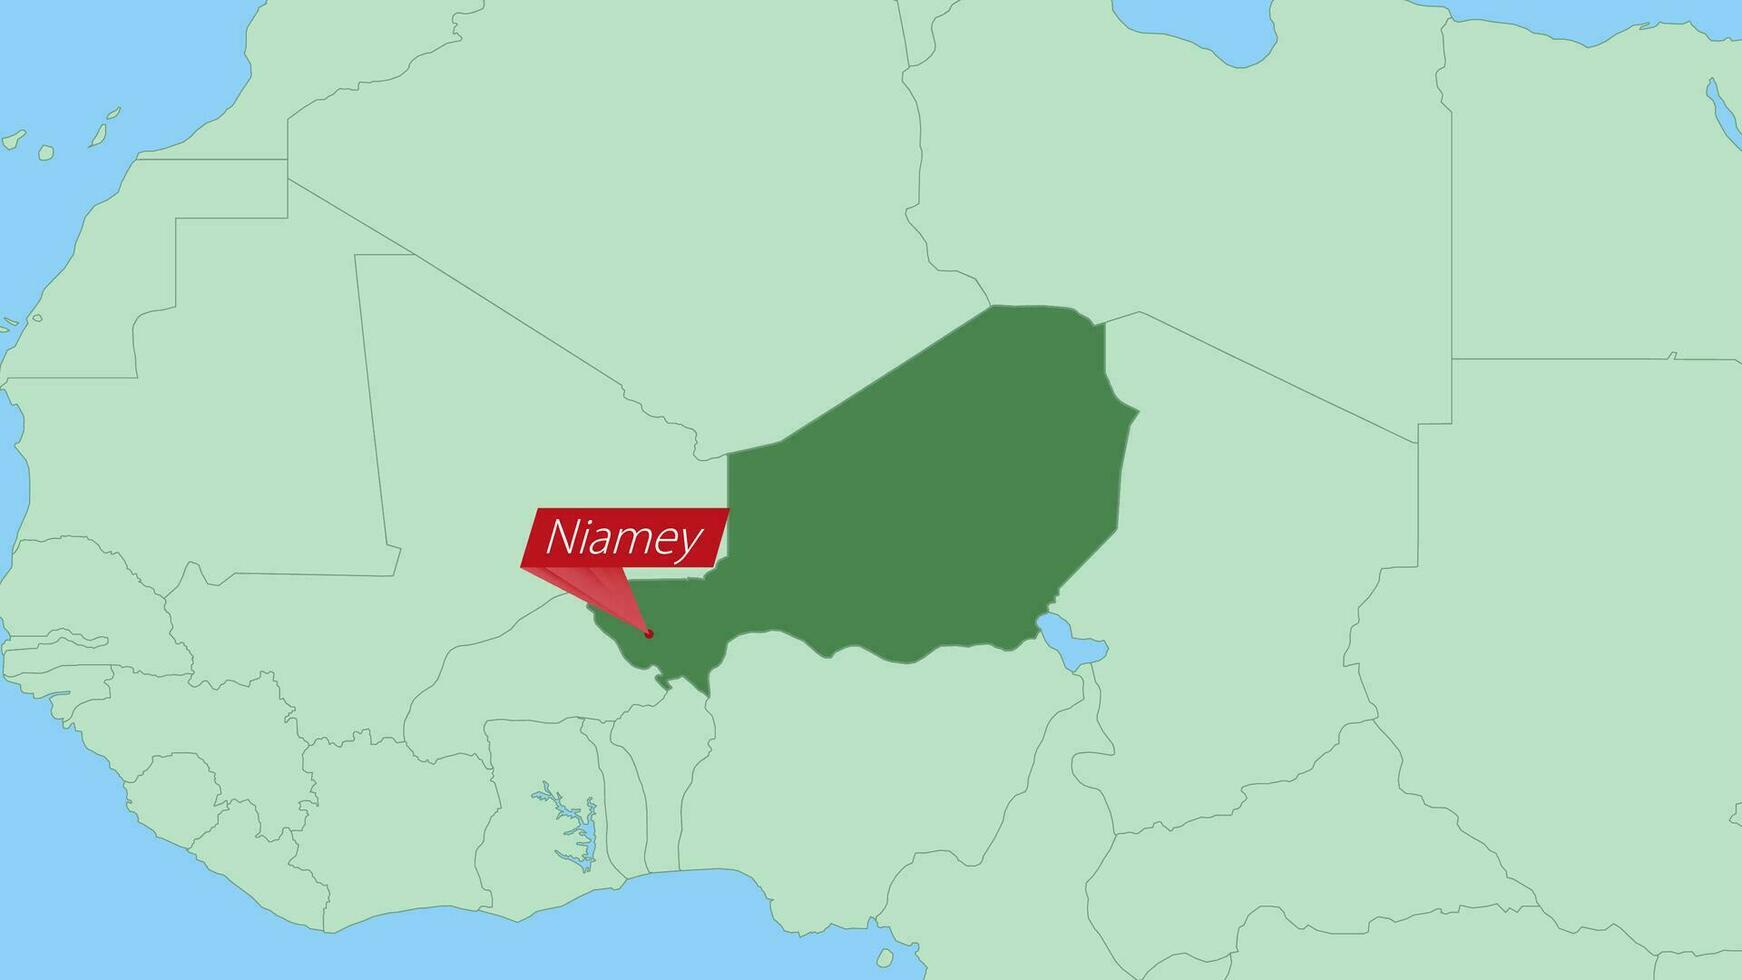 mapa de Níger con alfiler de país capital. vector